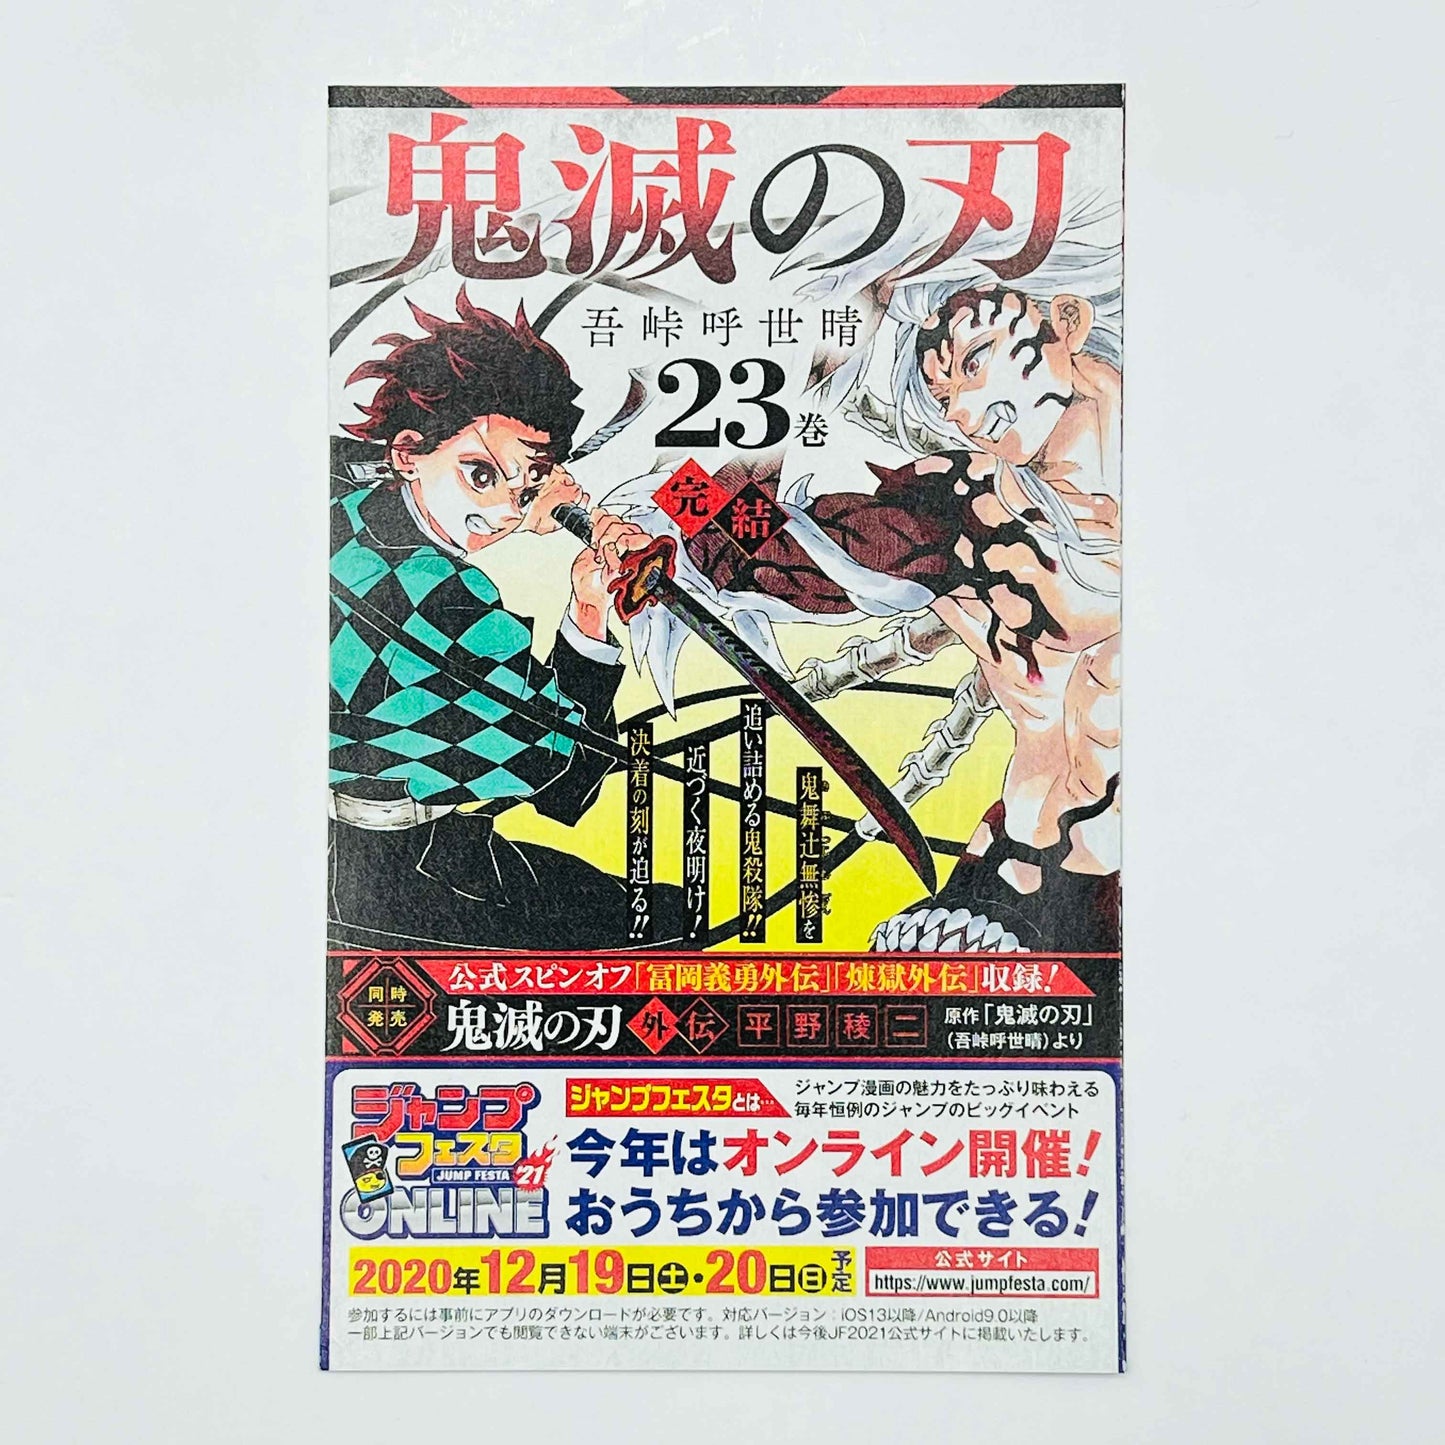 Kaiju No. 8 - Volume 01 /w Obi - 1stPrint.net - 1st First Print Edition Manga Store - M-KAIJU-01-008